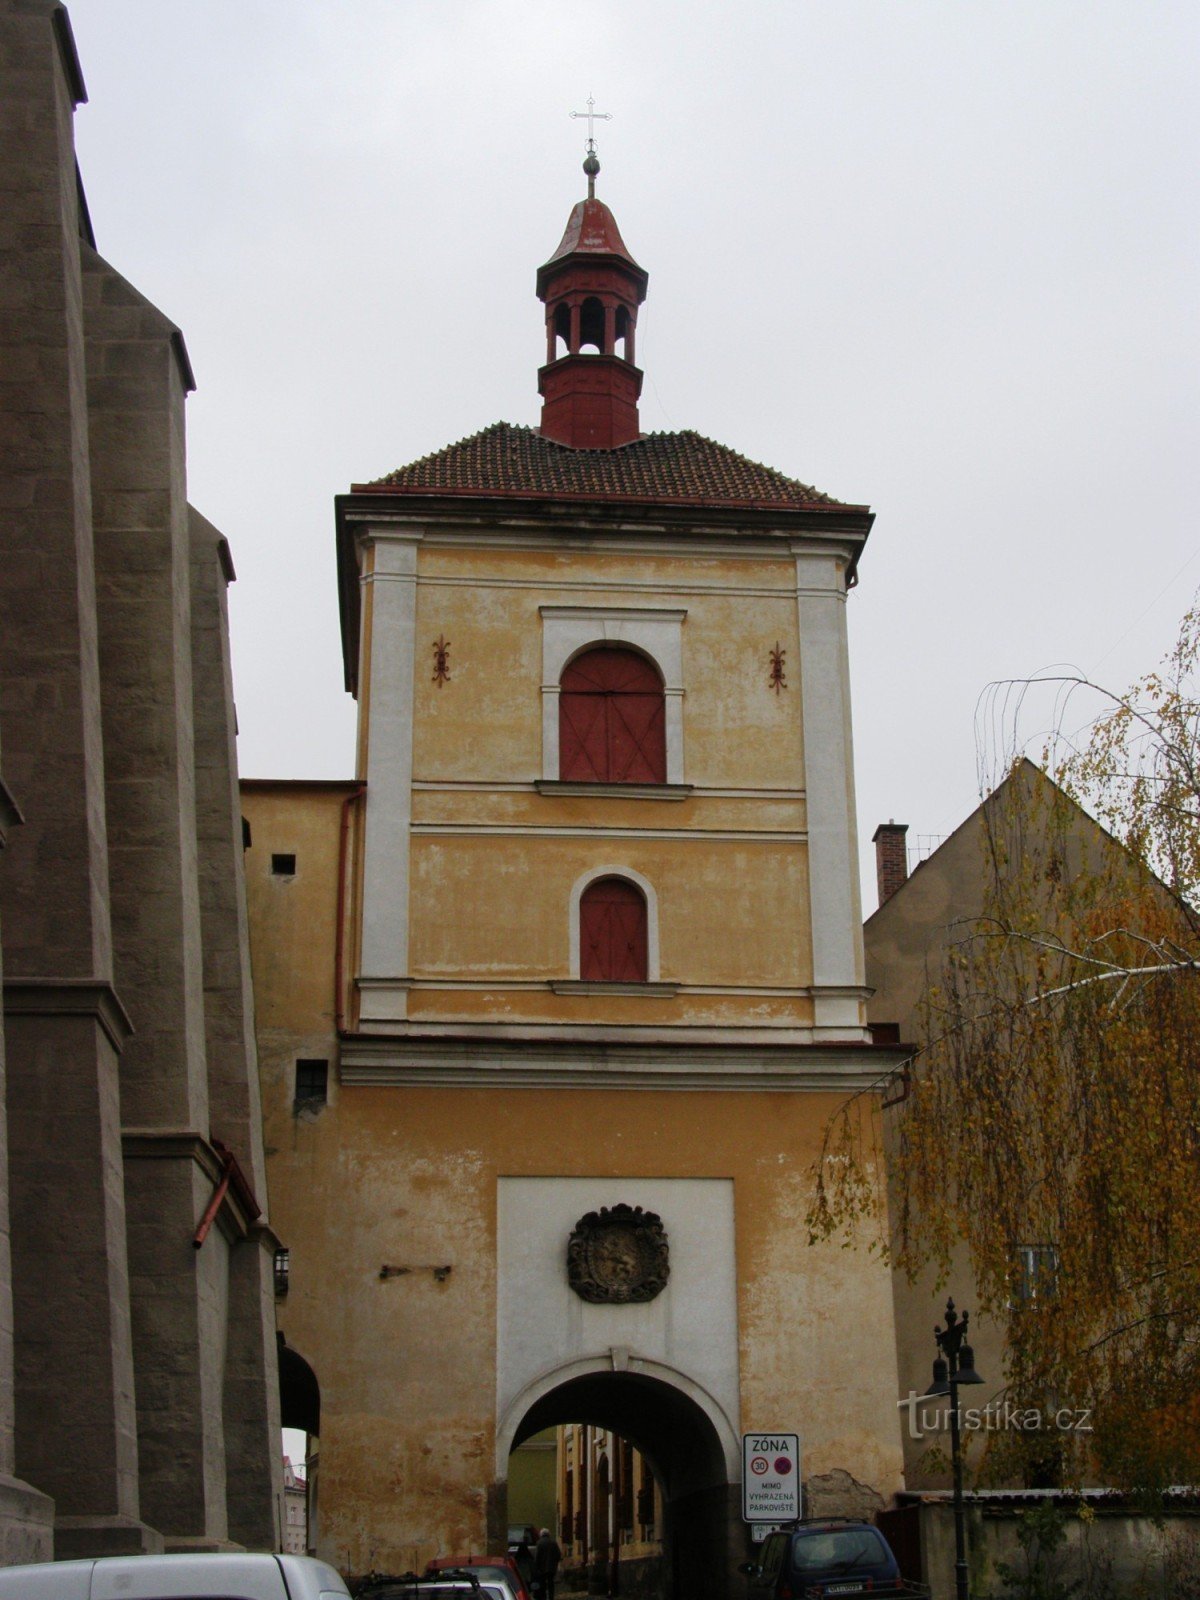 Jaroměř - puerta de la ciudad con campanario